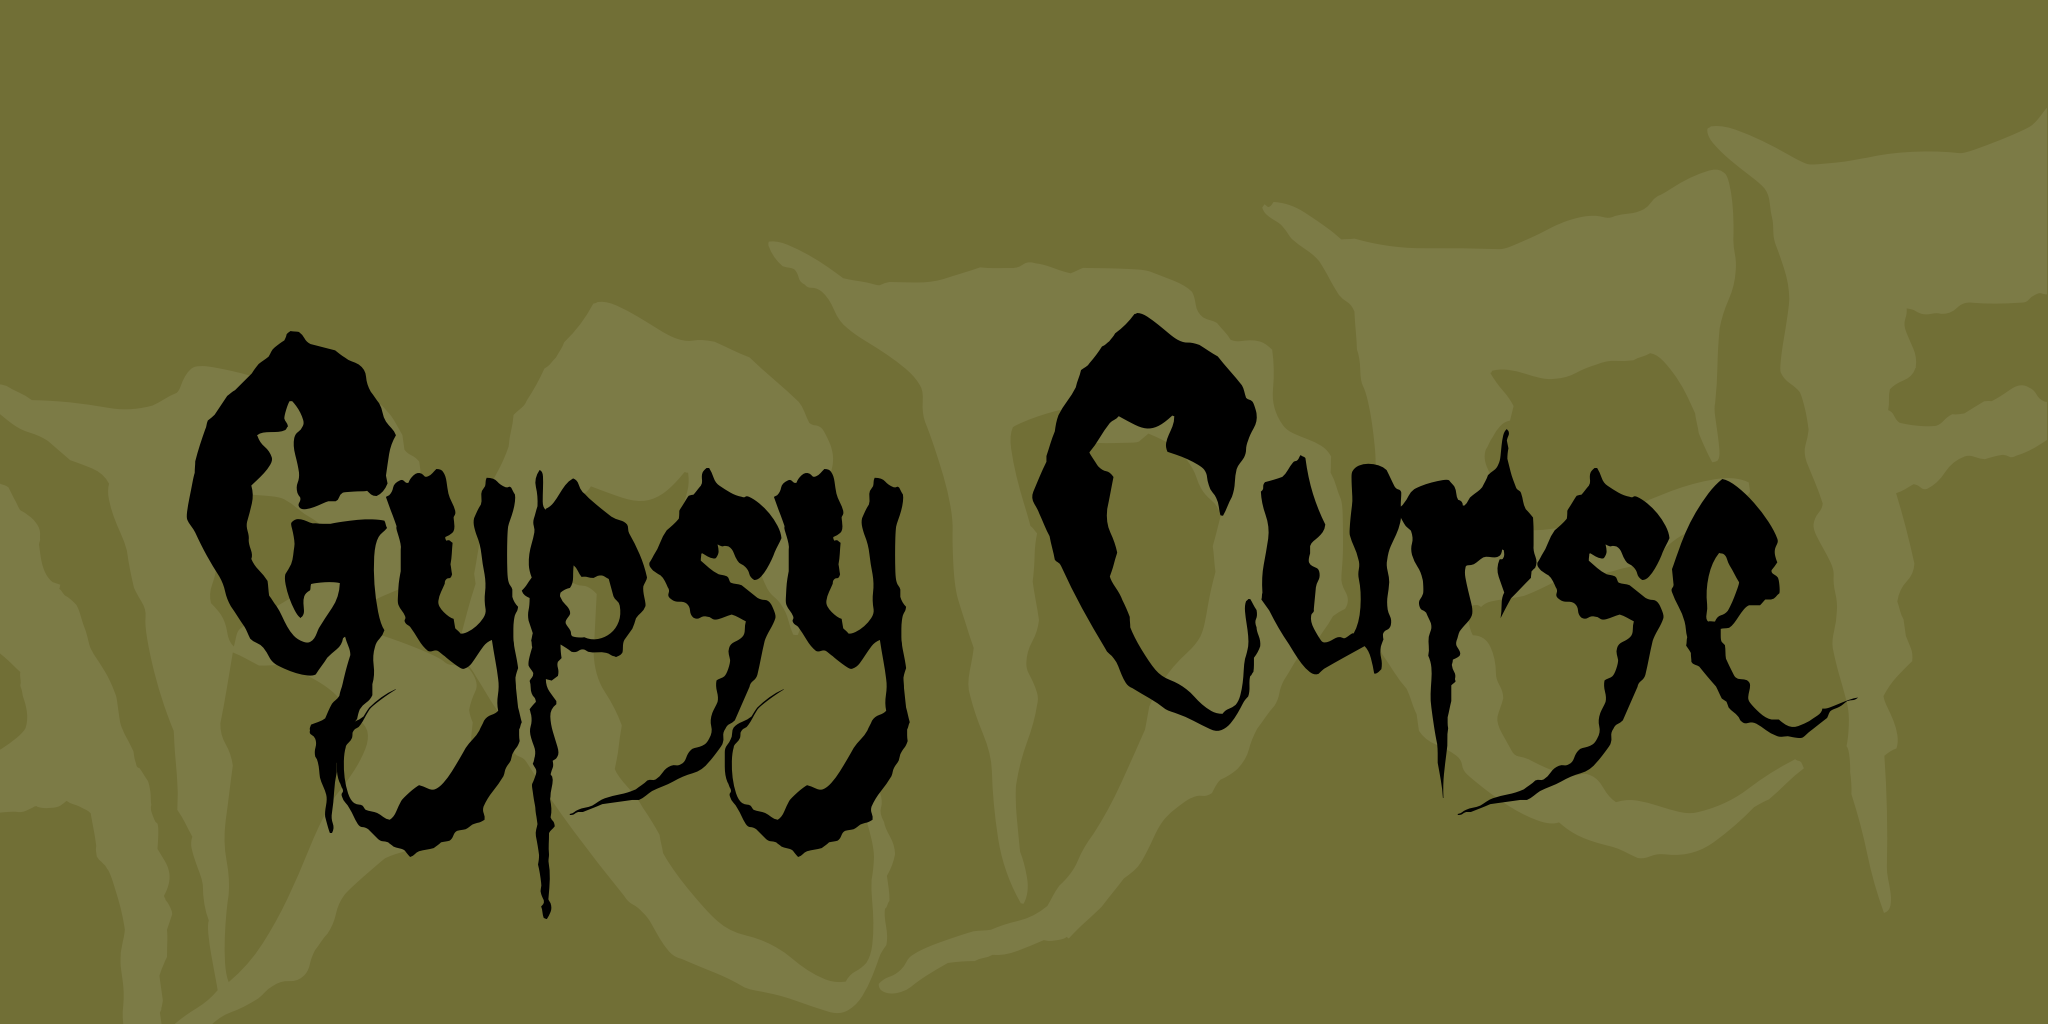 Gypsy Curse